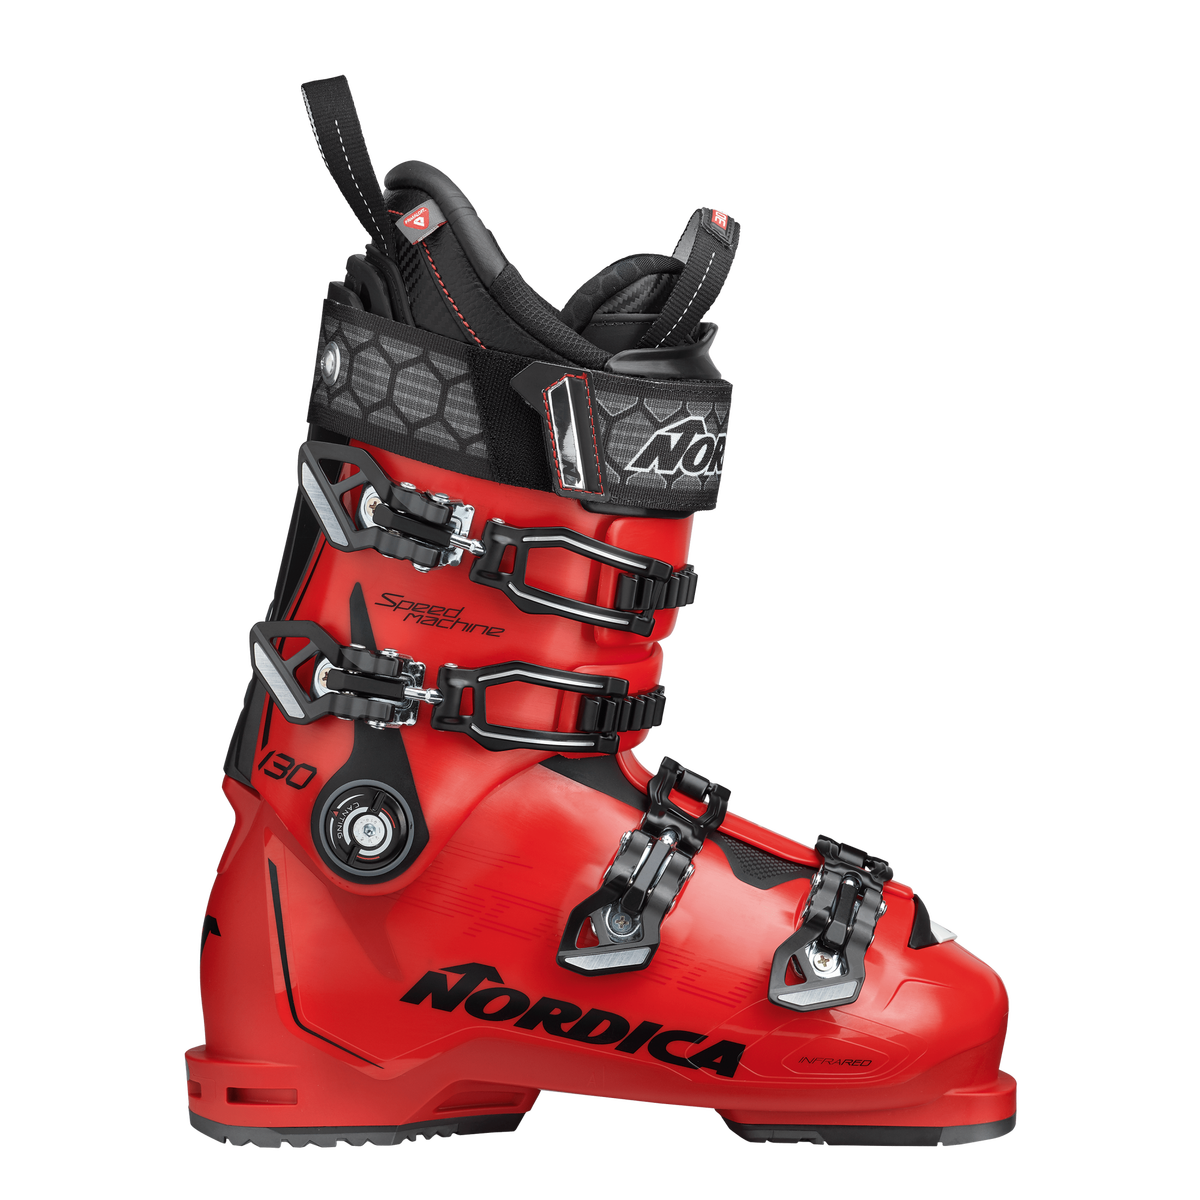 Lyžařské boty Nordica SPEEDMACHINE 130 - 275, red/black